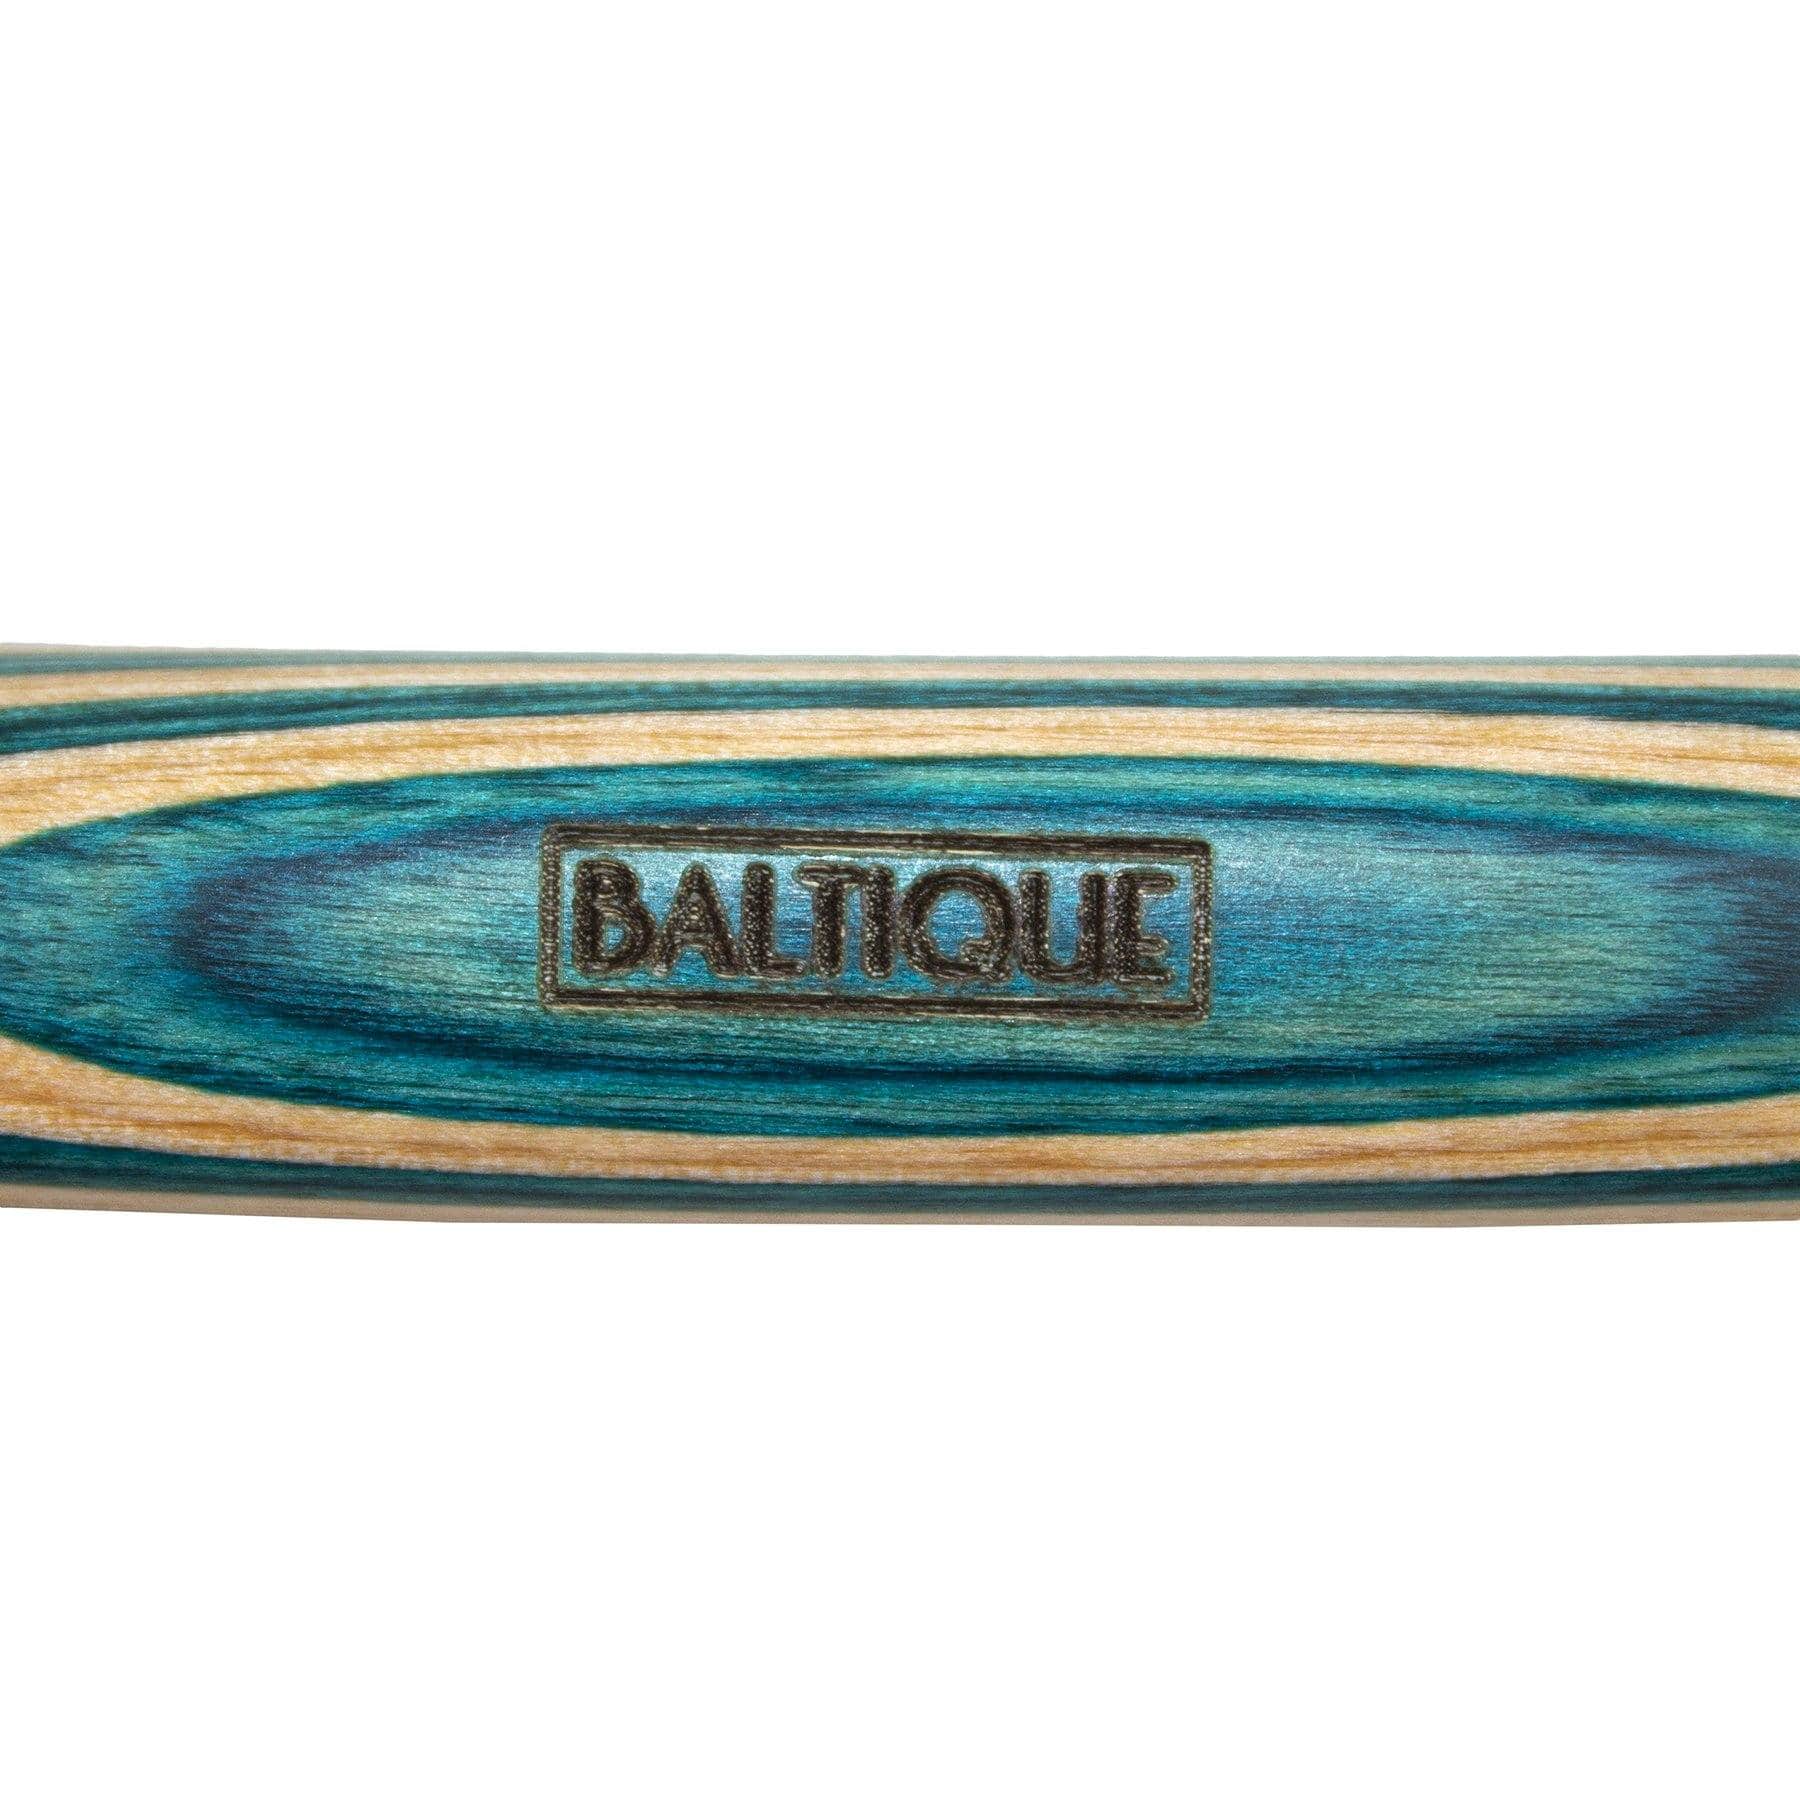 https://totallybamboo.com/cdn/shop/products/baltiquer-mykonos-collection-2-in-1-measuring-spoon-totally-bamboo-942818.jpg?v=1622837033